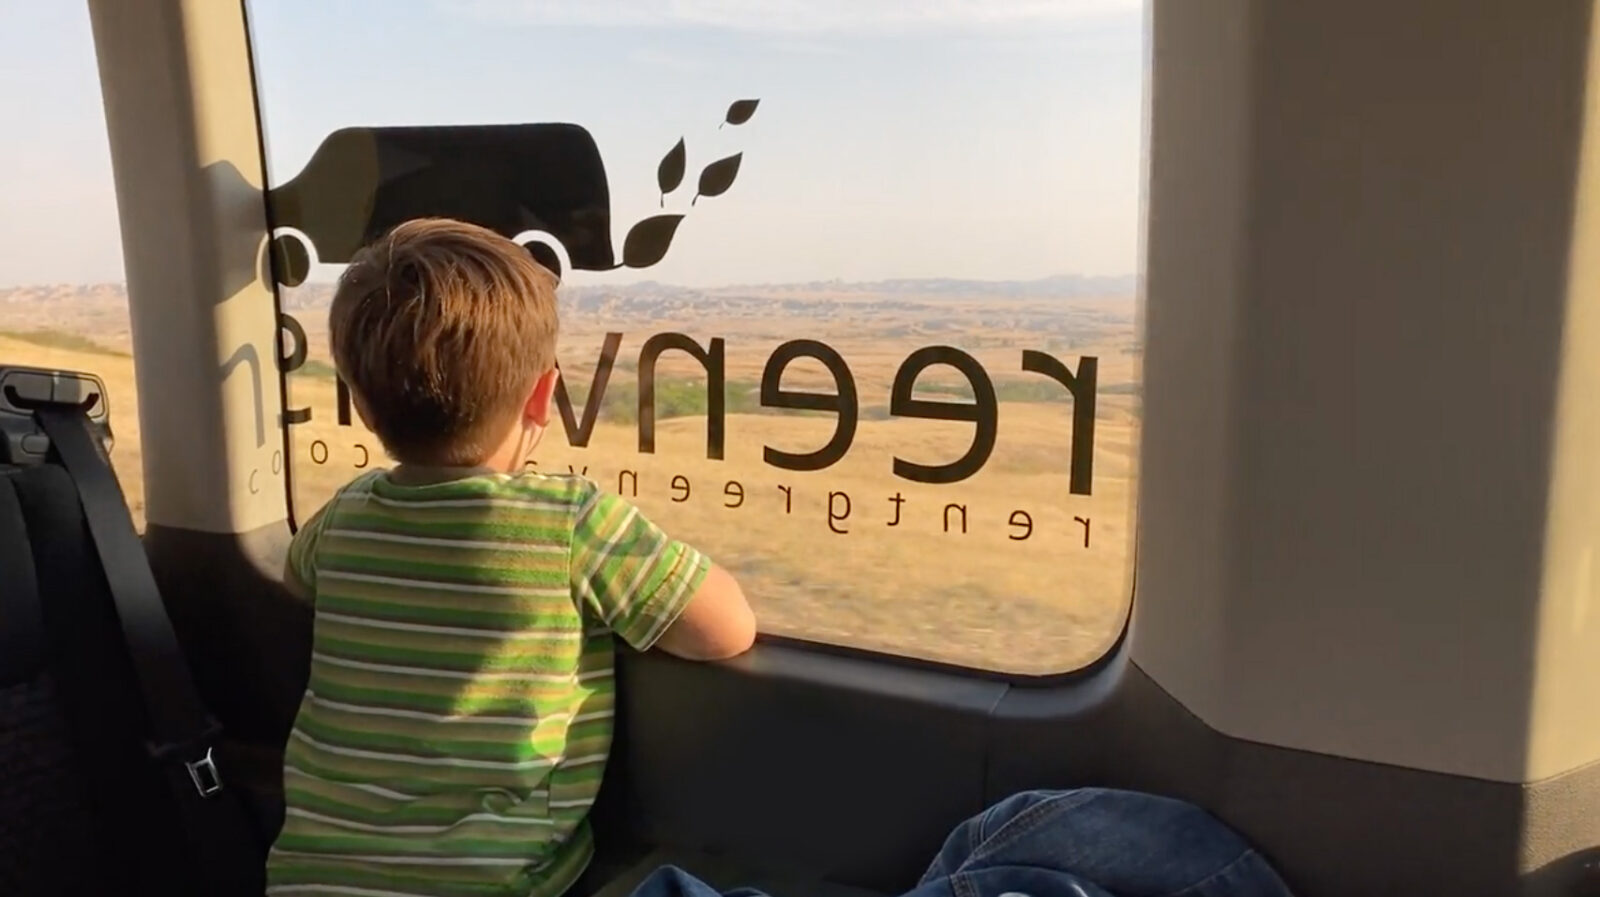 A boy looks out of a window of a Greenvans passenger van that has the Greenvans logo